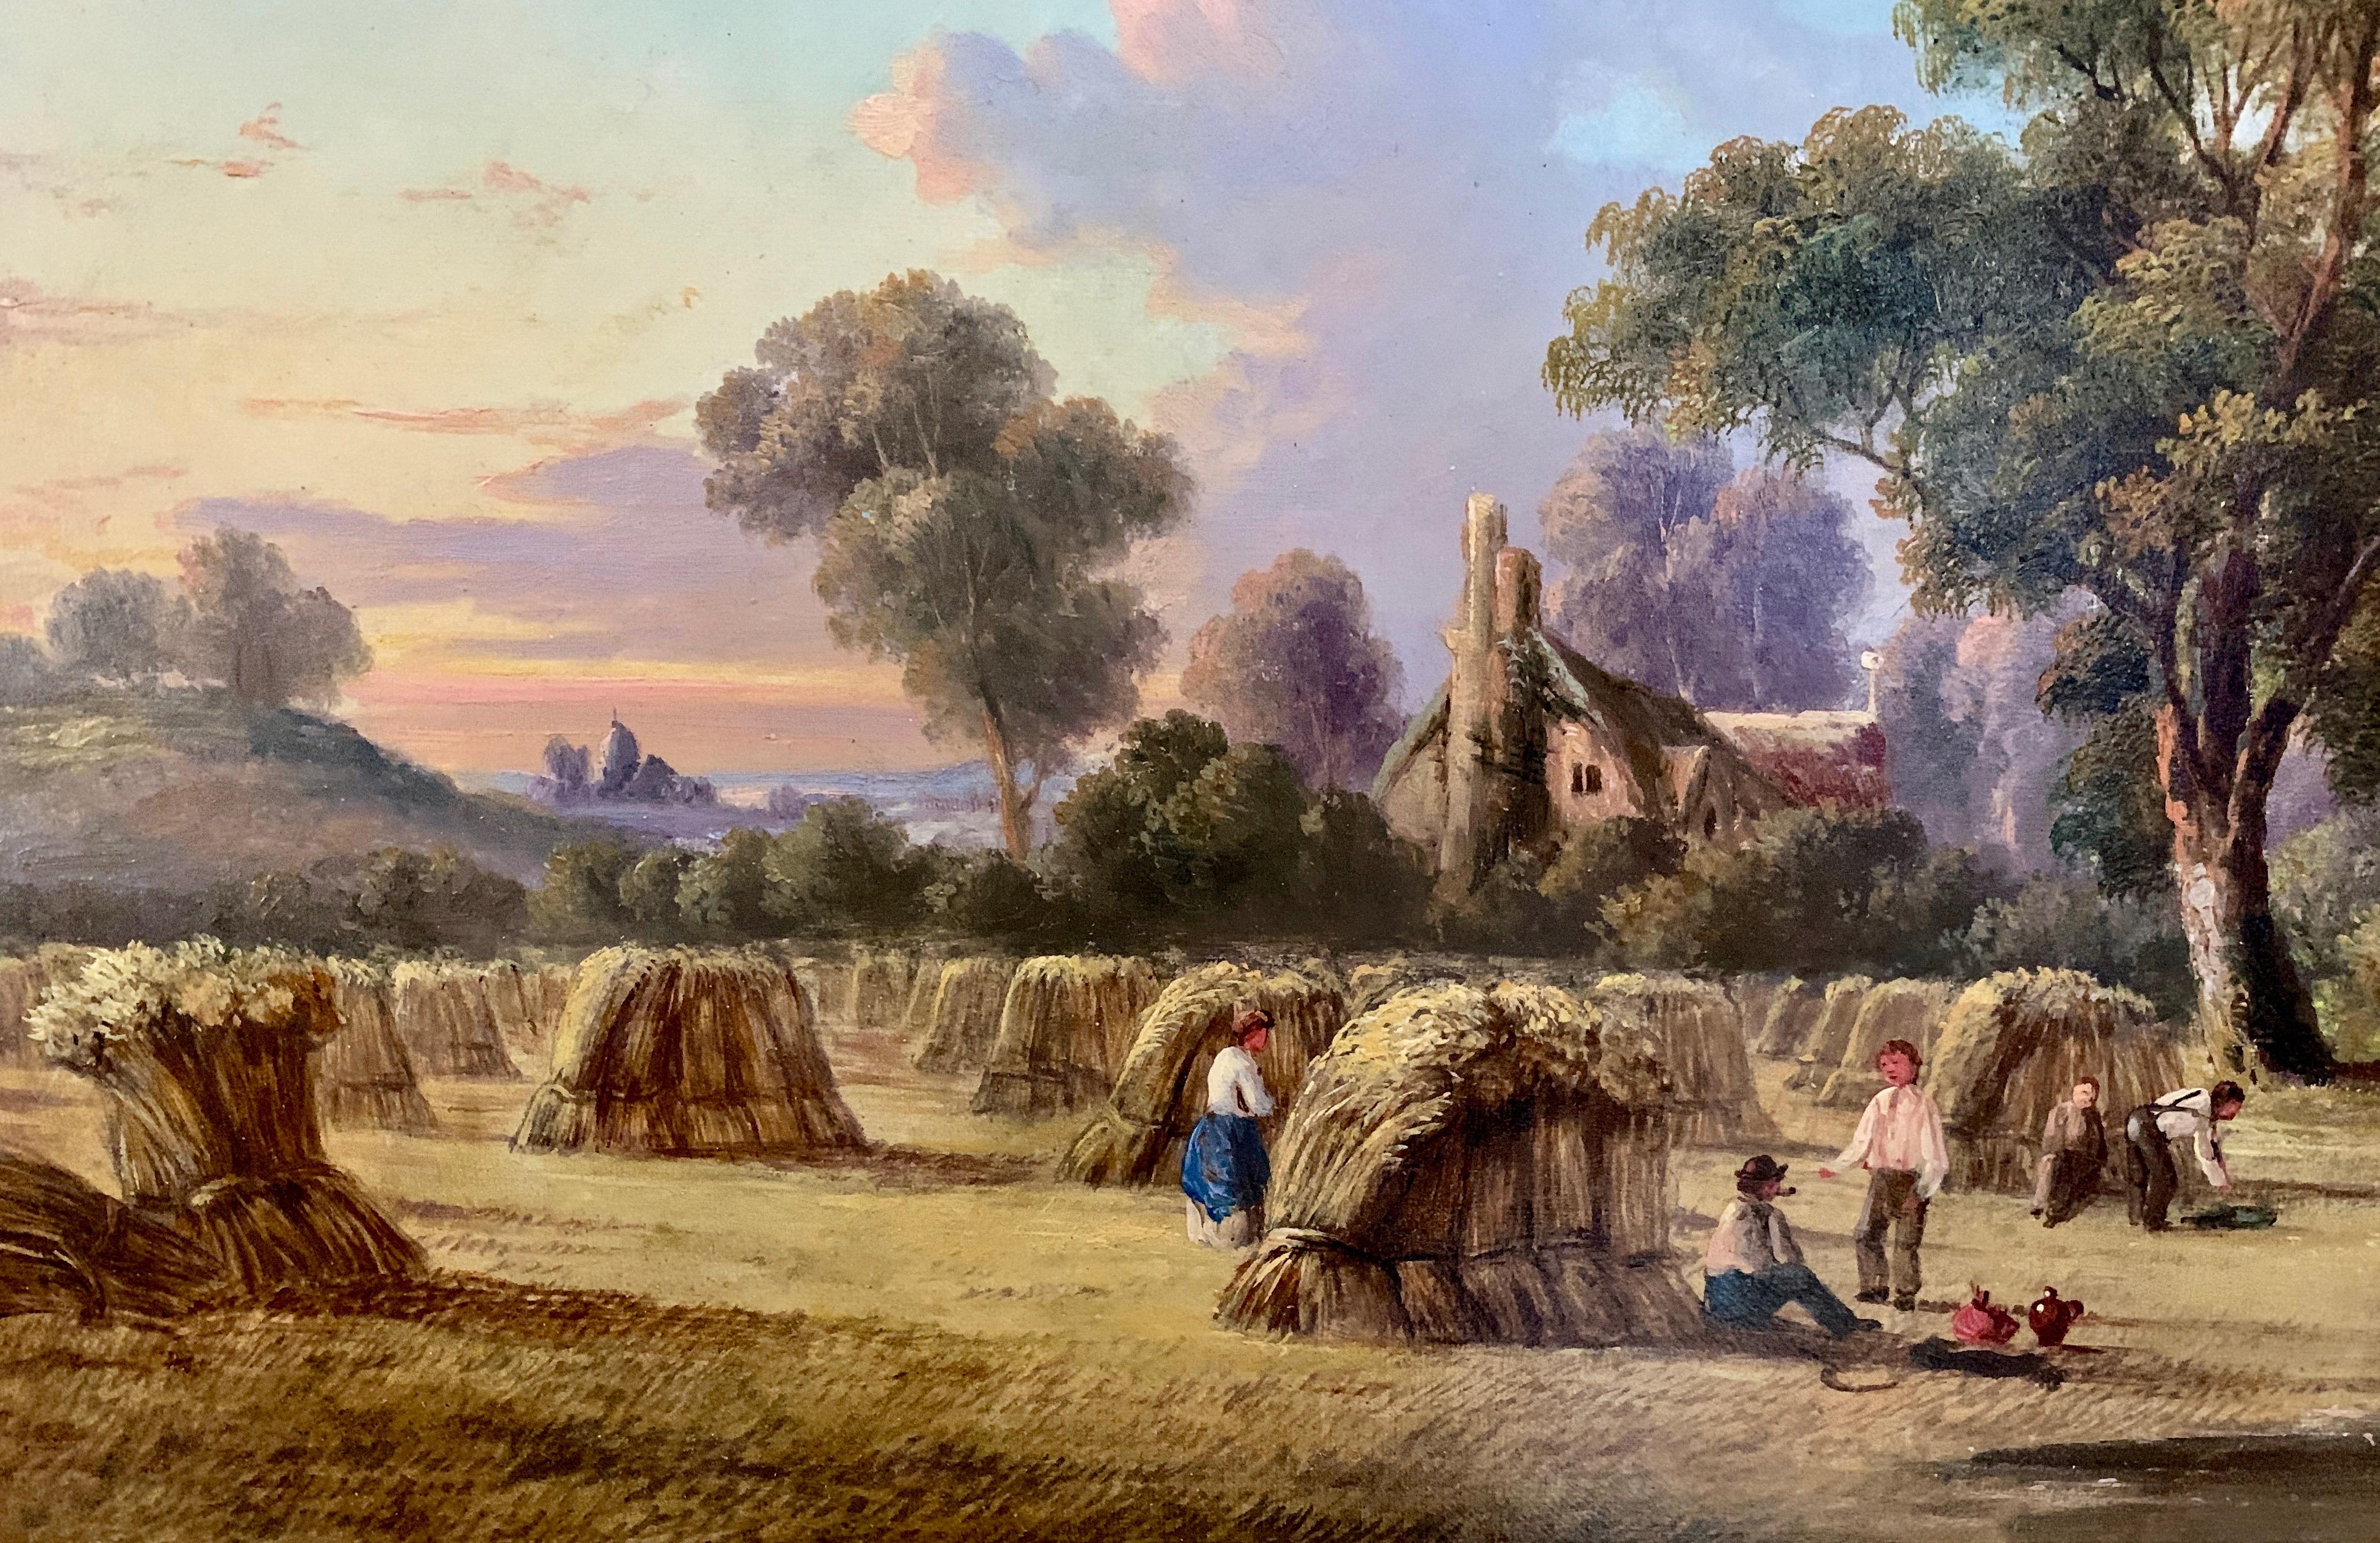 englische antike viktorianische Sommerlandschaft aus dem 19. Jahrhundert mit Figuren.

John Mundell war ein britischer Maler von Landschaften sowie von Fluss- und Küstenansichten. Es wird vermutet, dass Mundell ein Pseudonym von John James Wilson